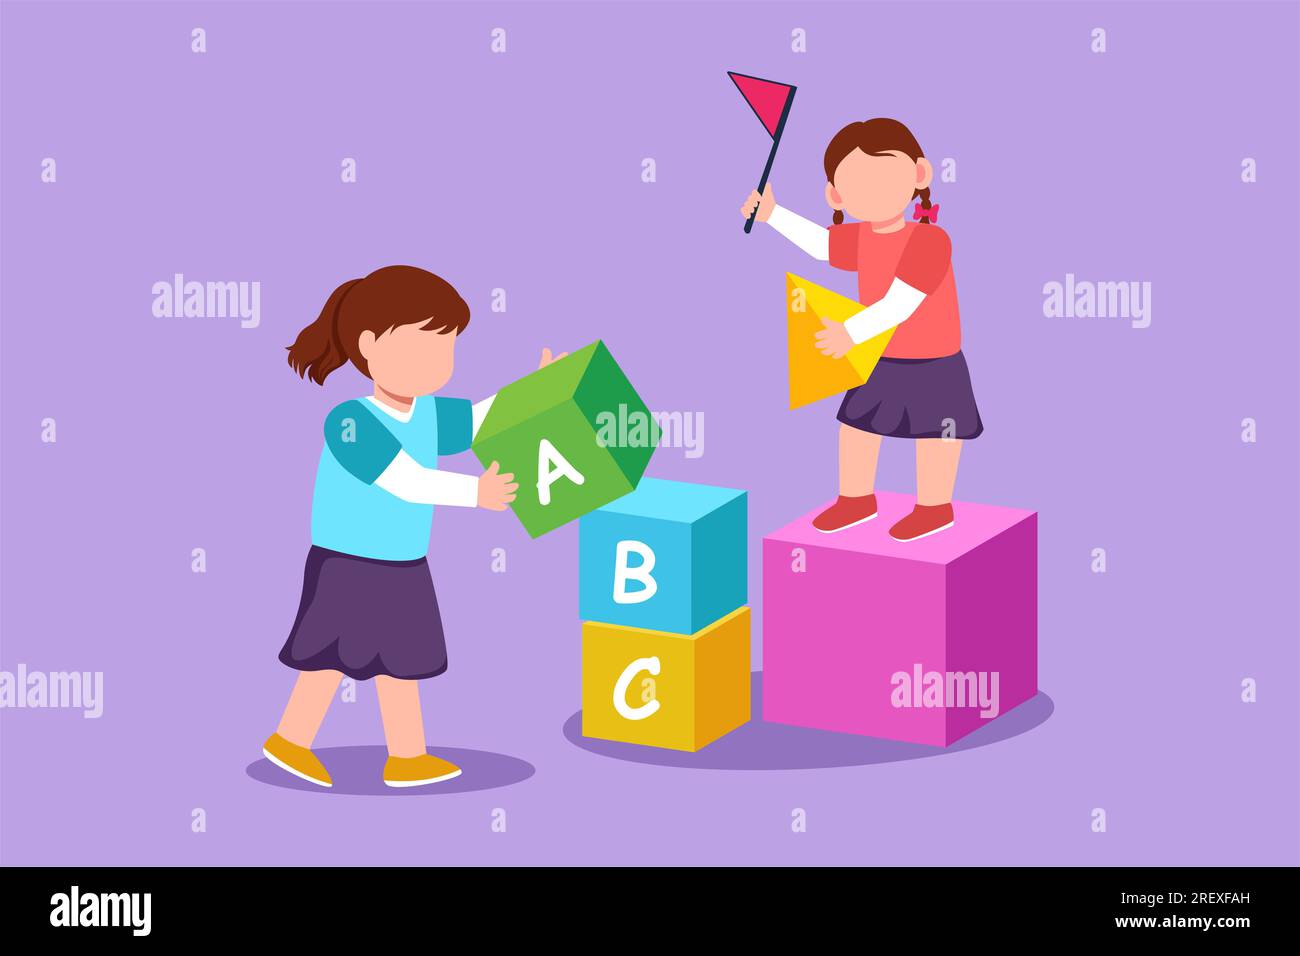 Dessin de style plat de dessin animé jolies deux petites filles jouant des blocs cubes jouets ensemble. Jouets éducatifs. Enfants jouant des cubes de concepteur, développemental Banque D'Images